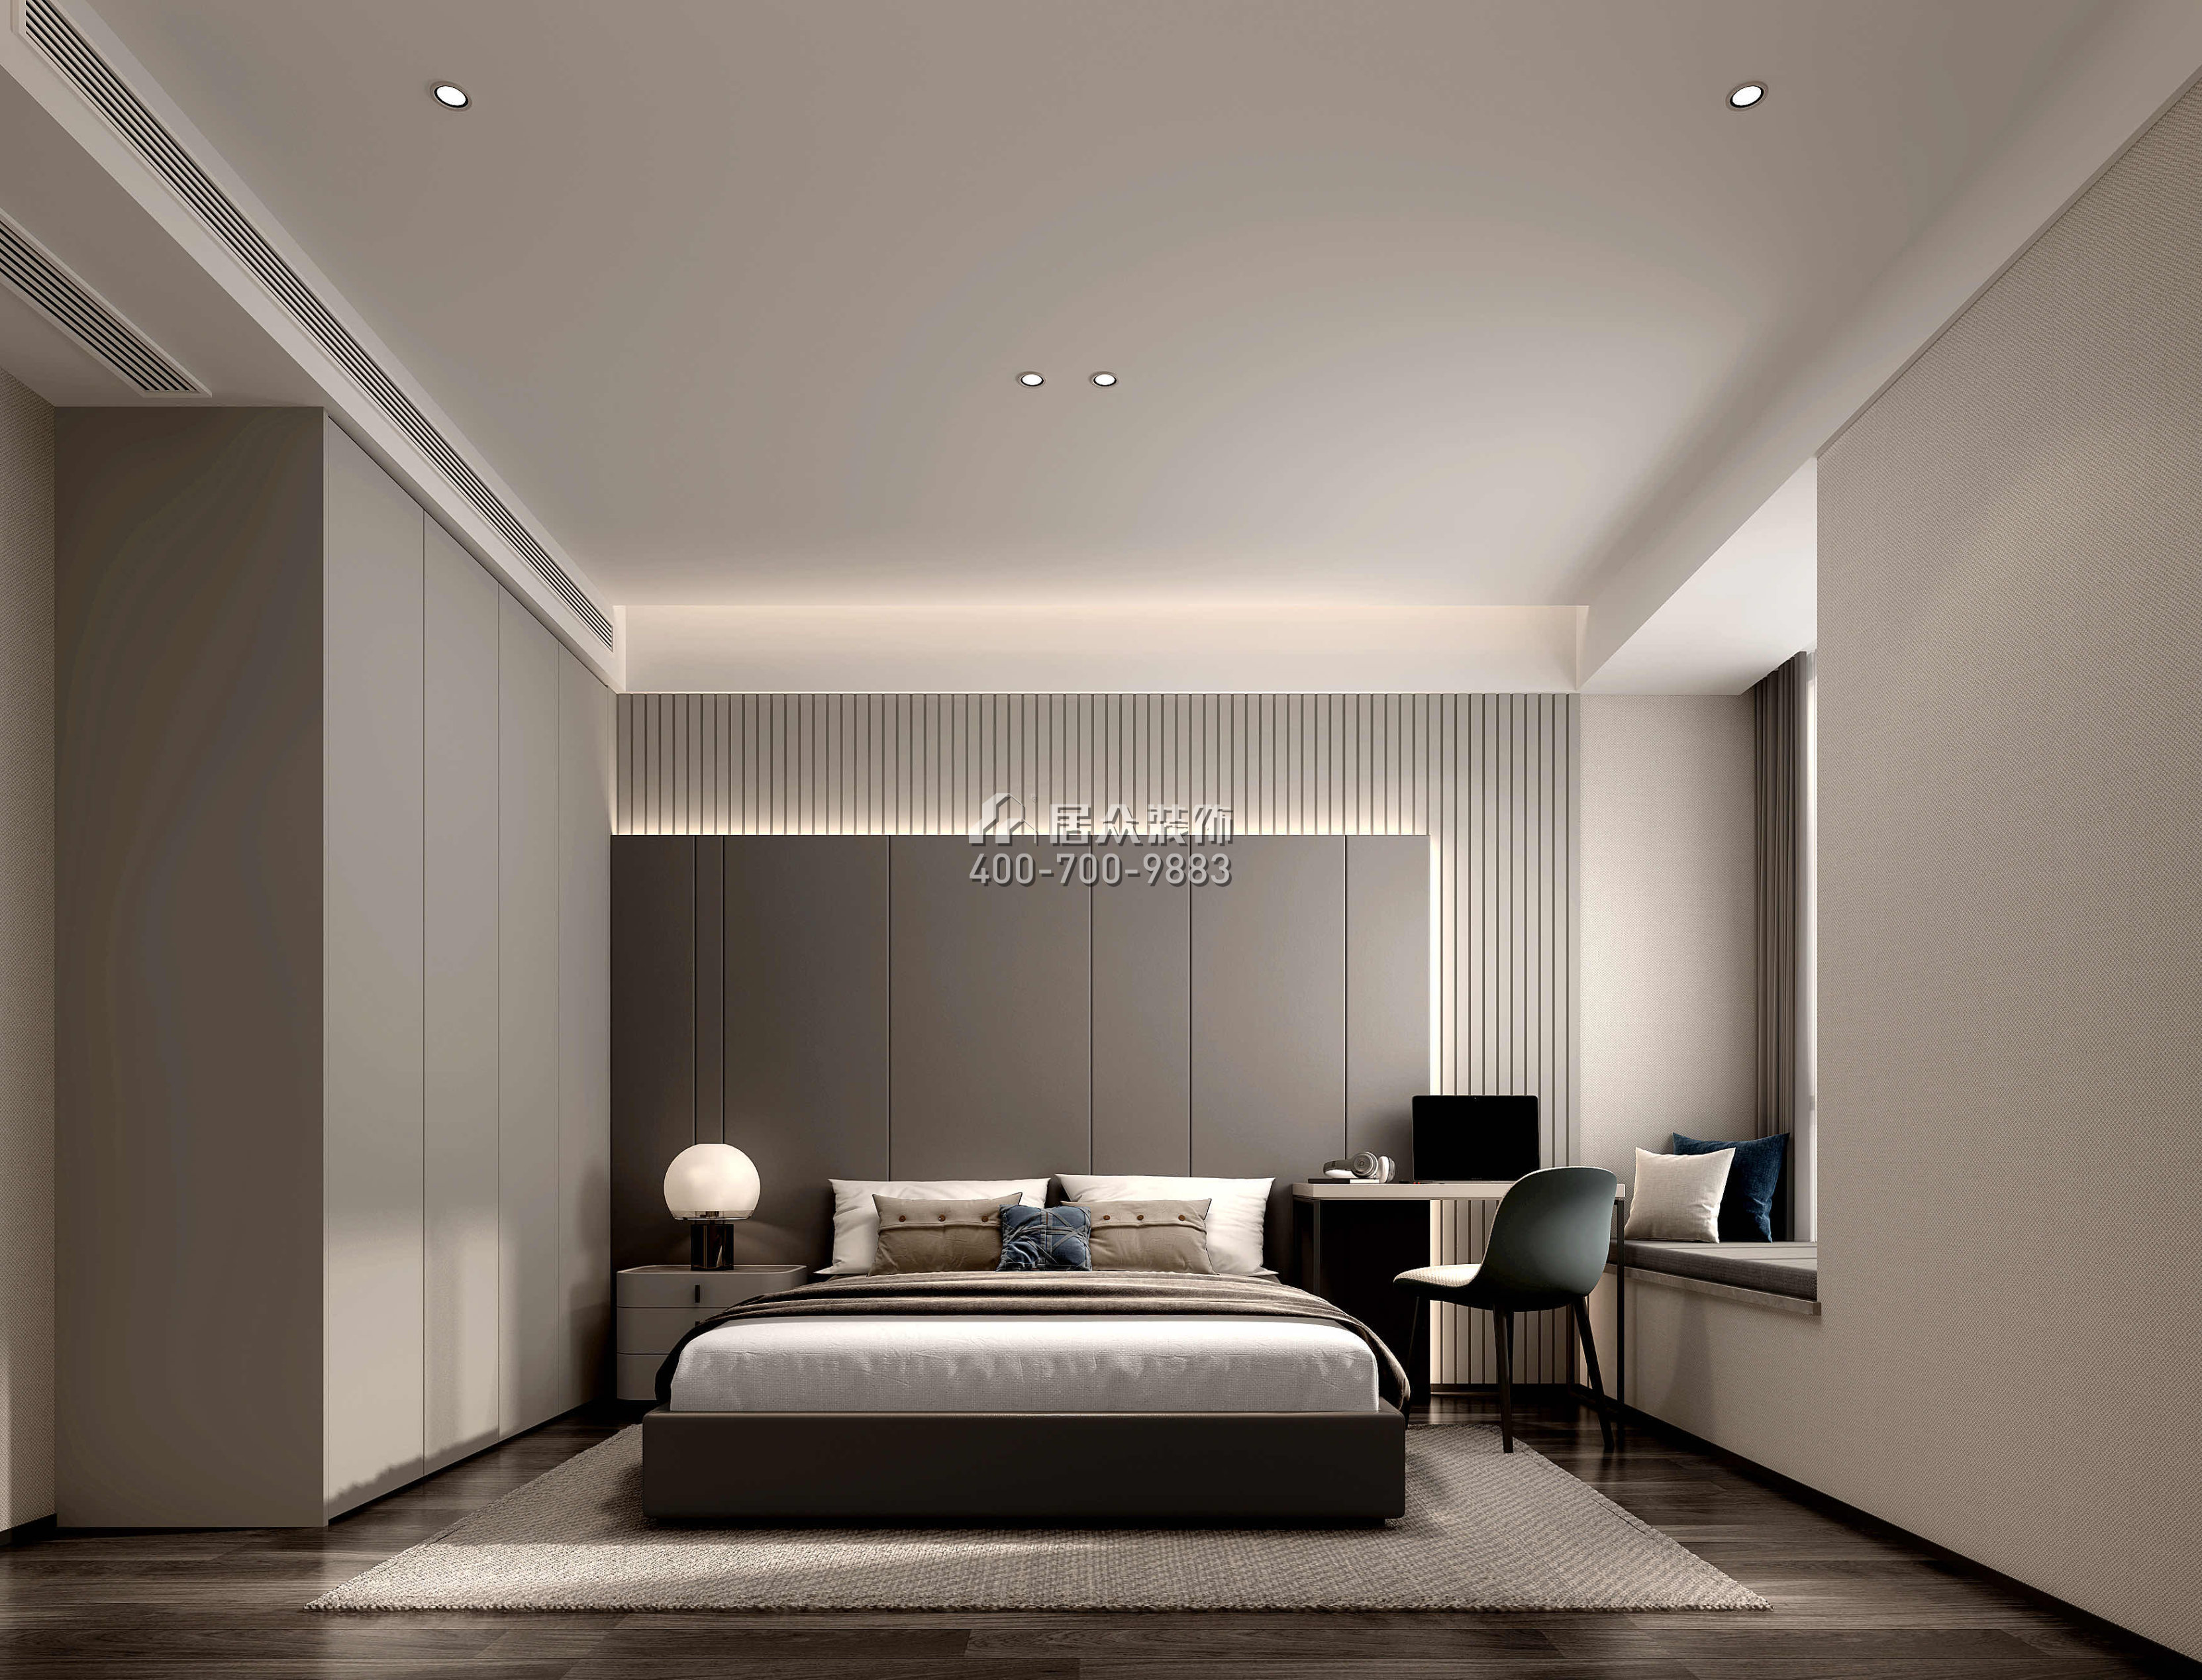 嘉華星際灣238平方米現代簡約風格平層戶型臥室裝修效果圖